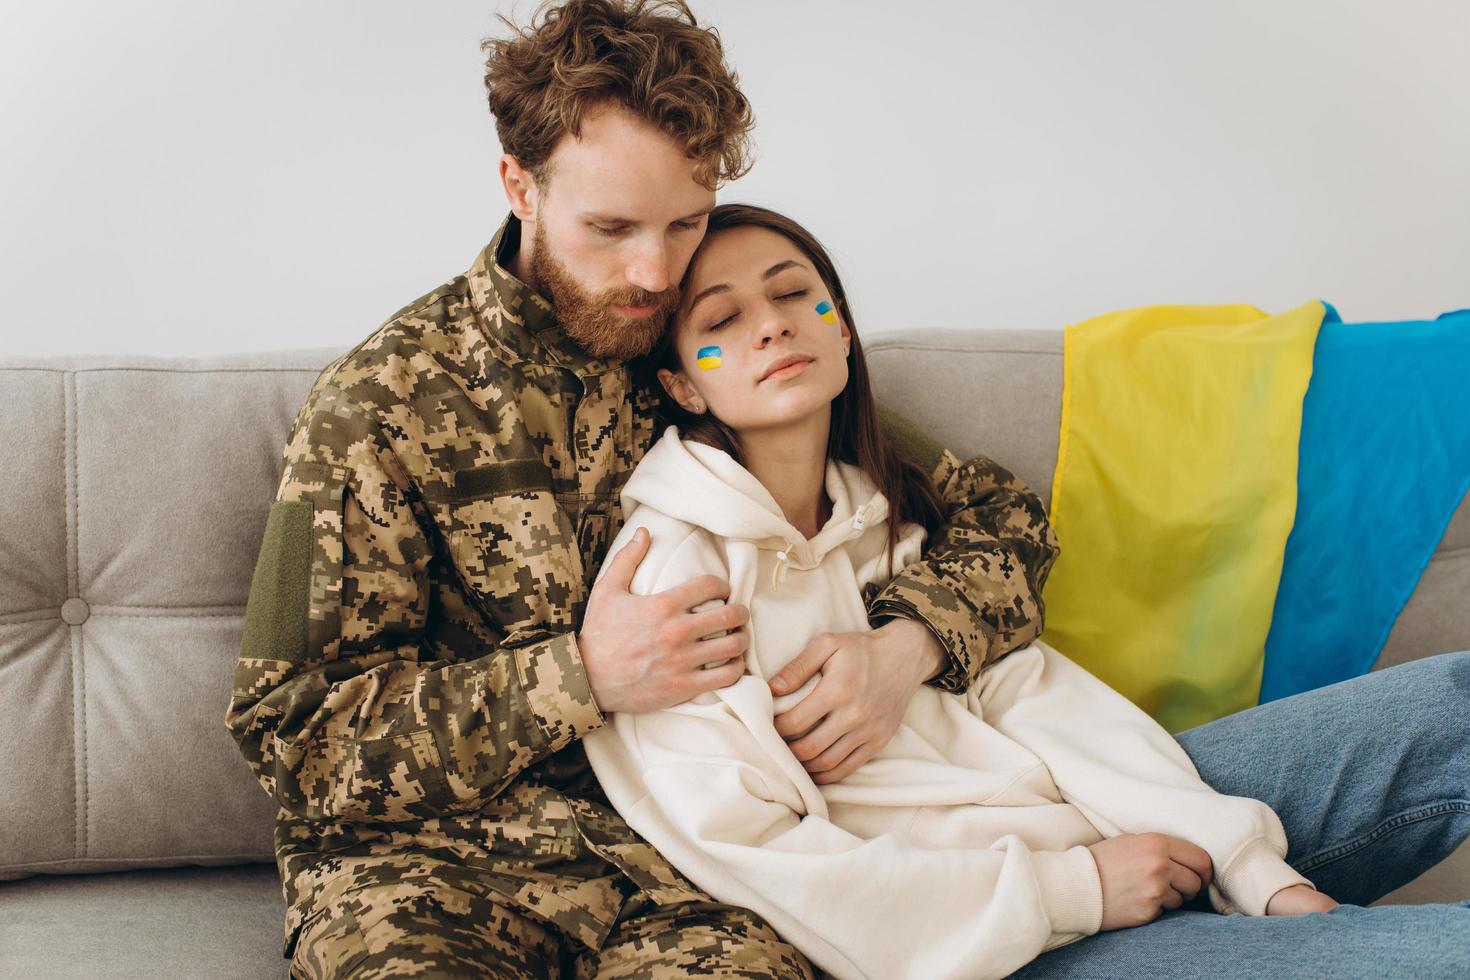 pareja ucraniana, militar uniformado con su novia en el sofá de casa sobre un fondo de bandera amarilla y azul foto